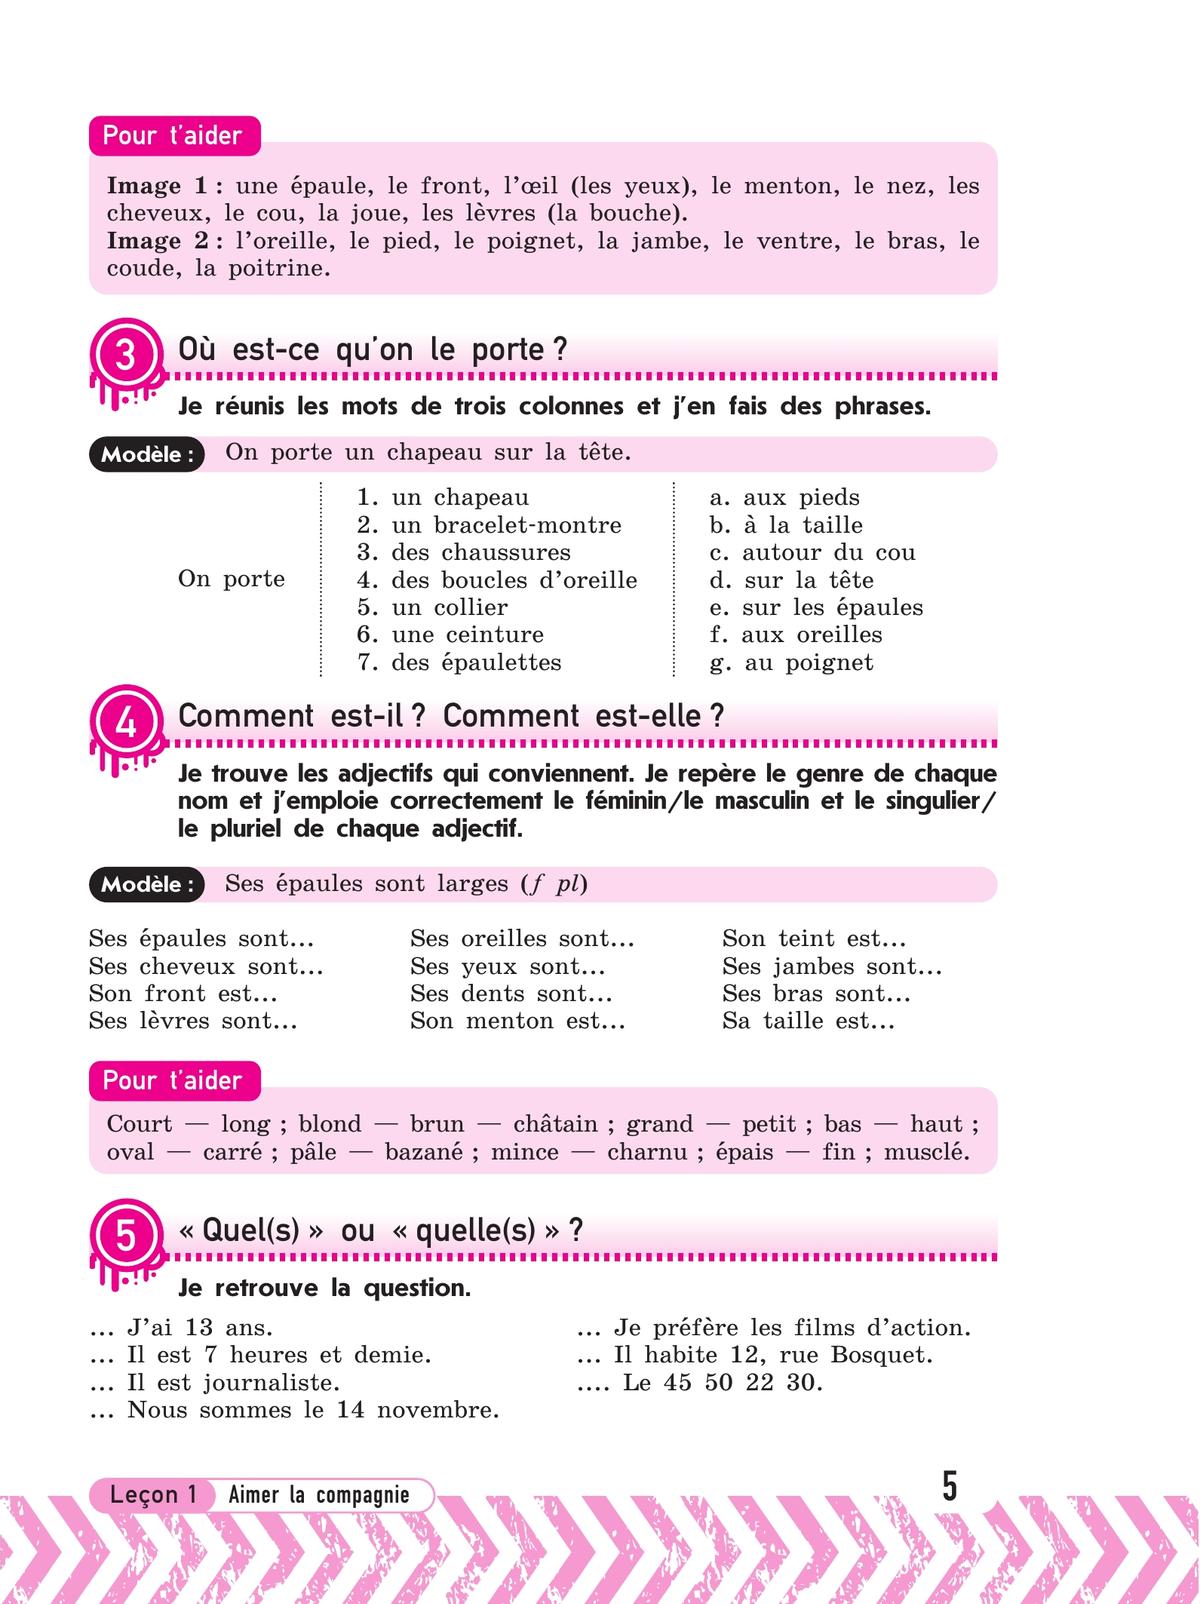 Французский язык. Рабочая тетрадь. 7 класс 6